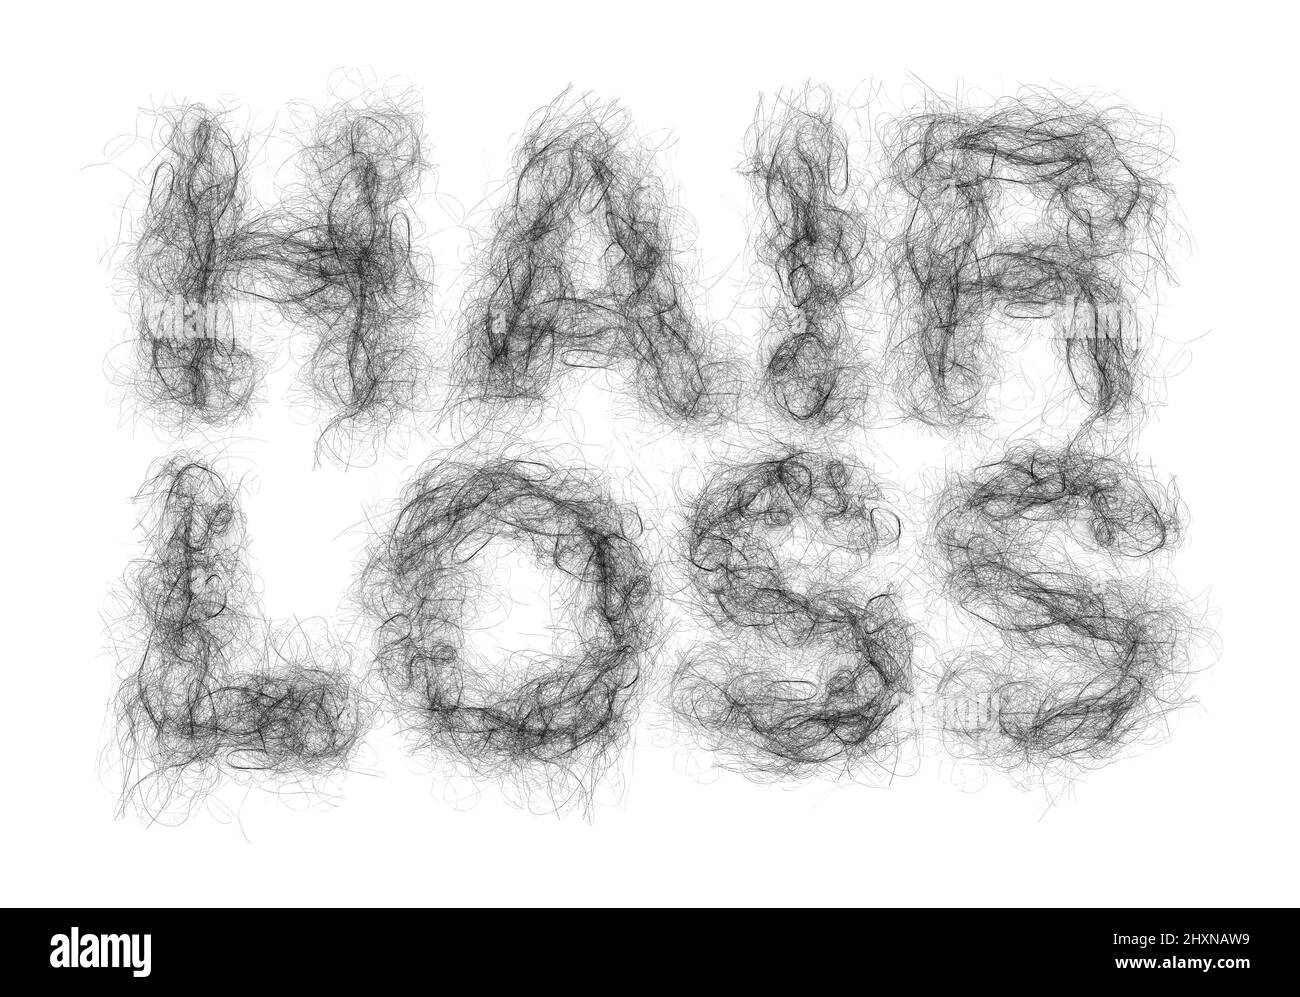 Haarausfall oder Alopezie und Balding medizinisches Konzept als Klumpen von Follikeln als Text, der einen zurückgehenden Haaransatz mit dünner werdenden Follikeln darstellt geformt. Stockfoto